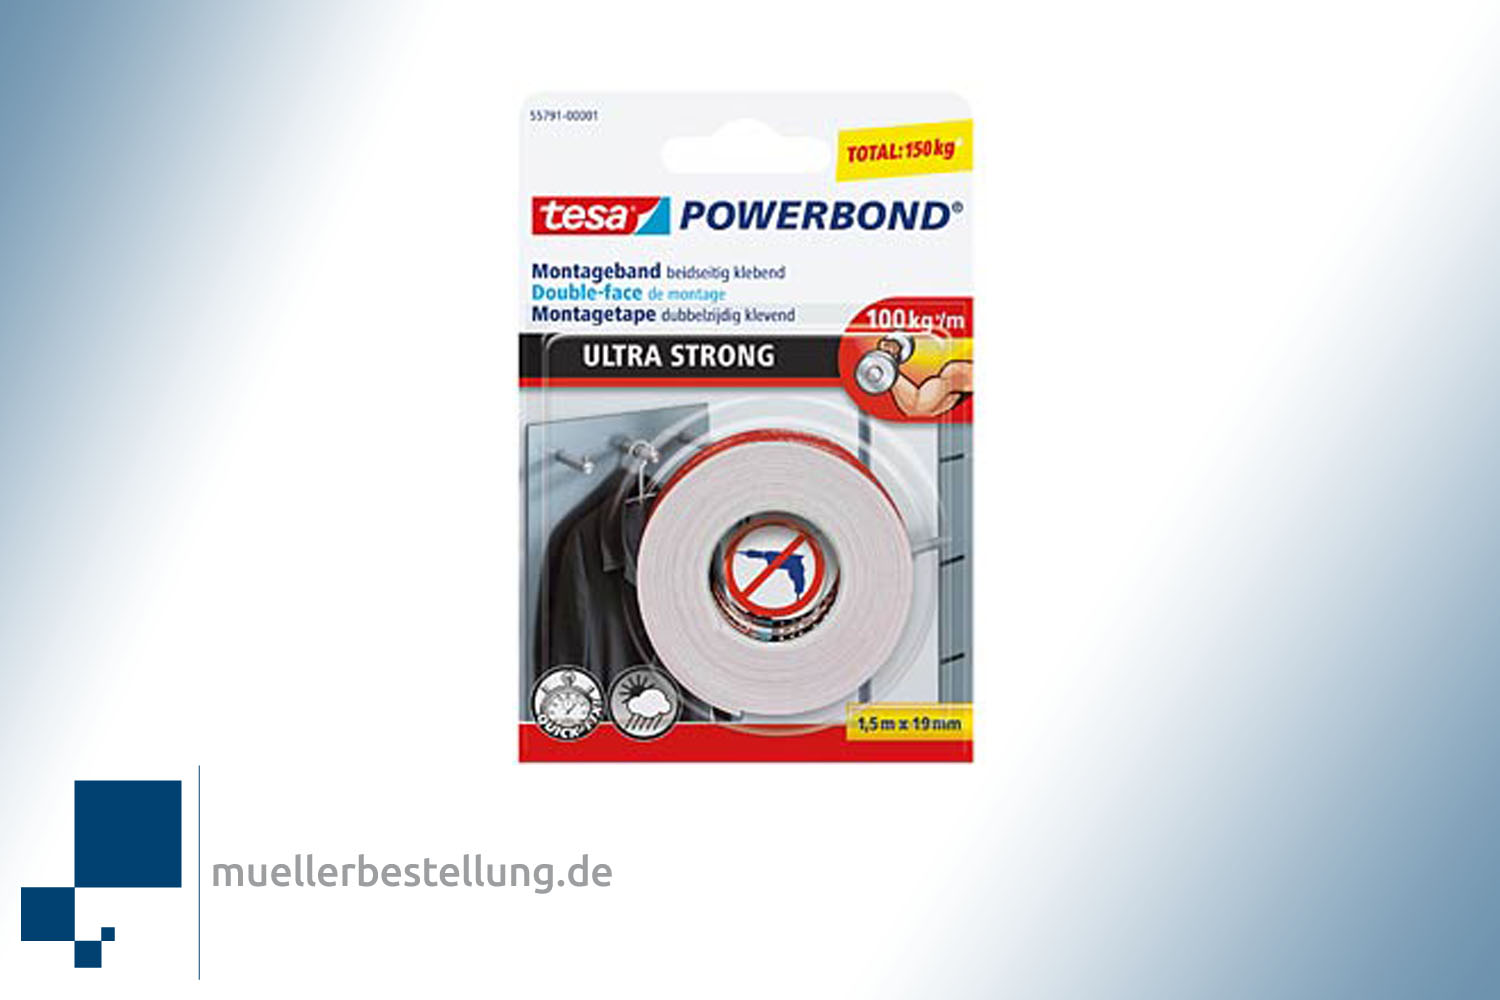 Montážní páska TESA 55791 tesa Powerbond® Ultra Strong, 1,5 m x 19 mm